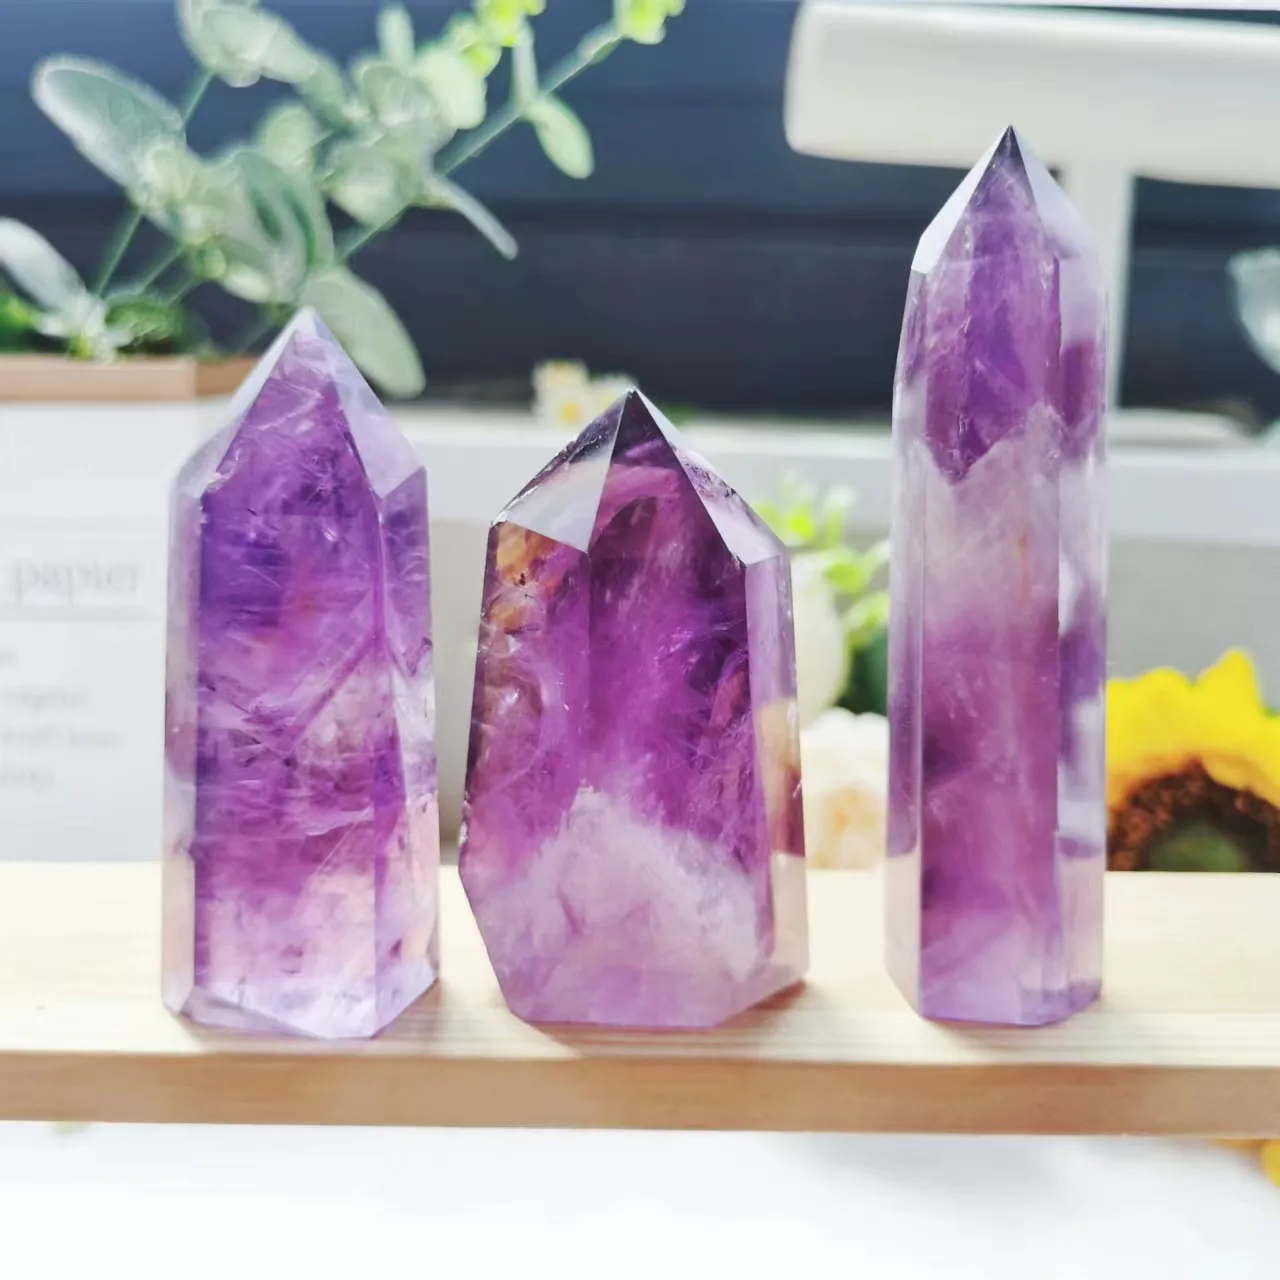 Commercio all'ingrosso di alta qualità Healing Stone Point ametista Point Crystal prezzi torre di ametista viola